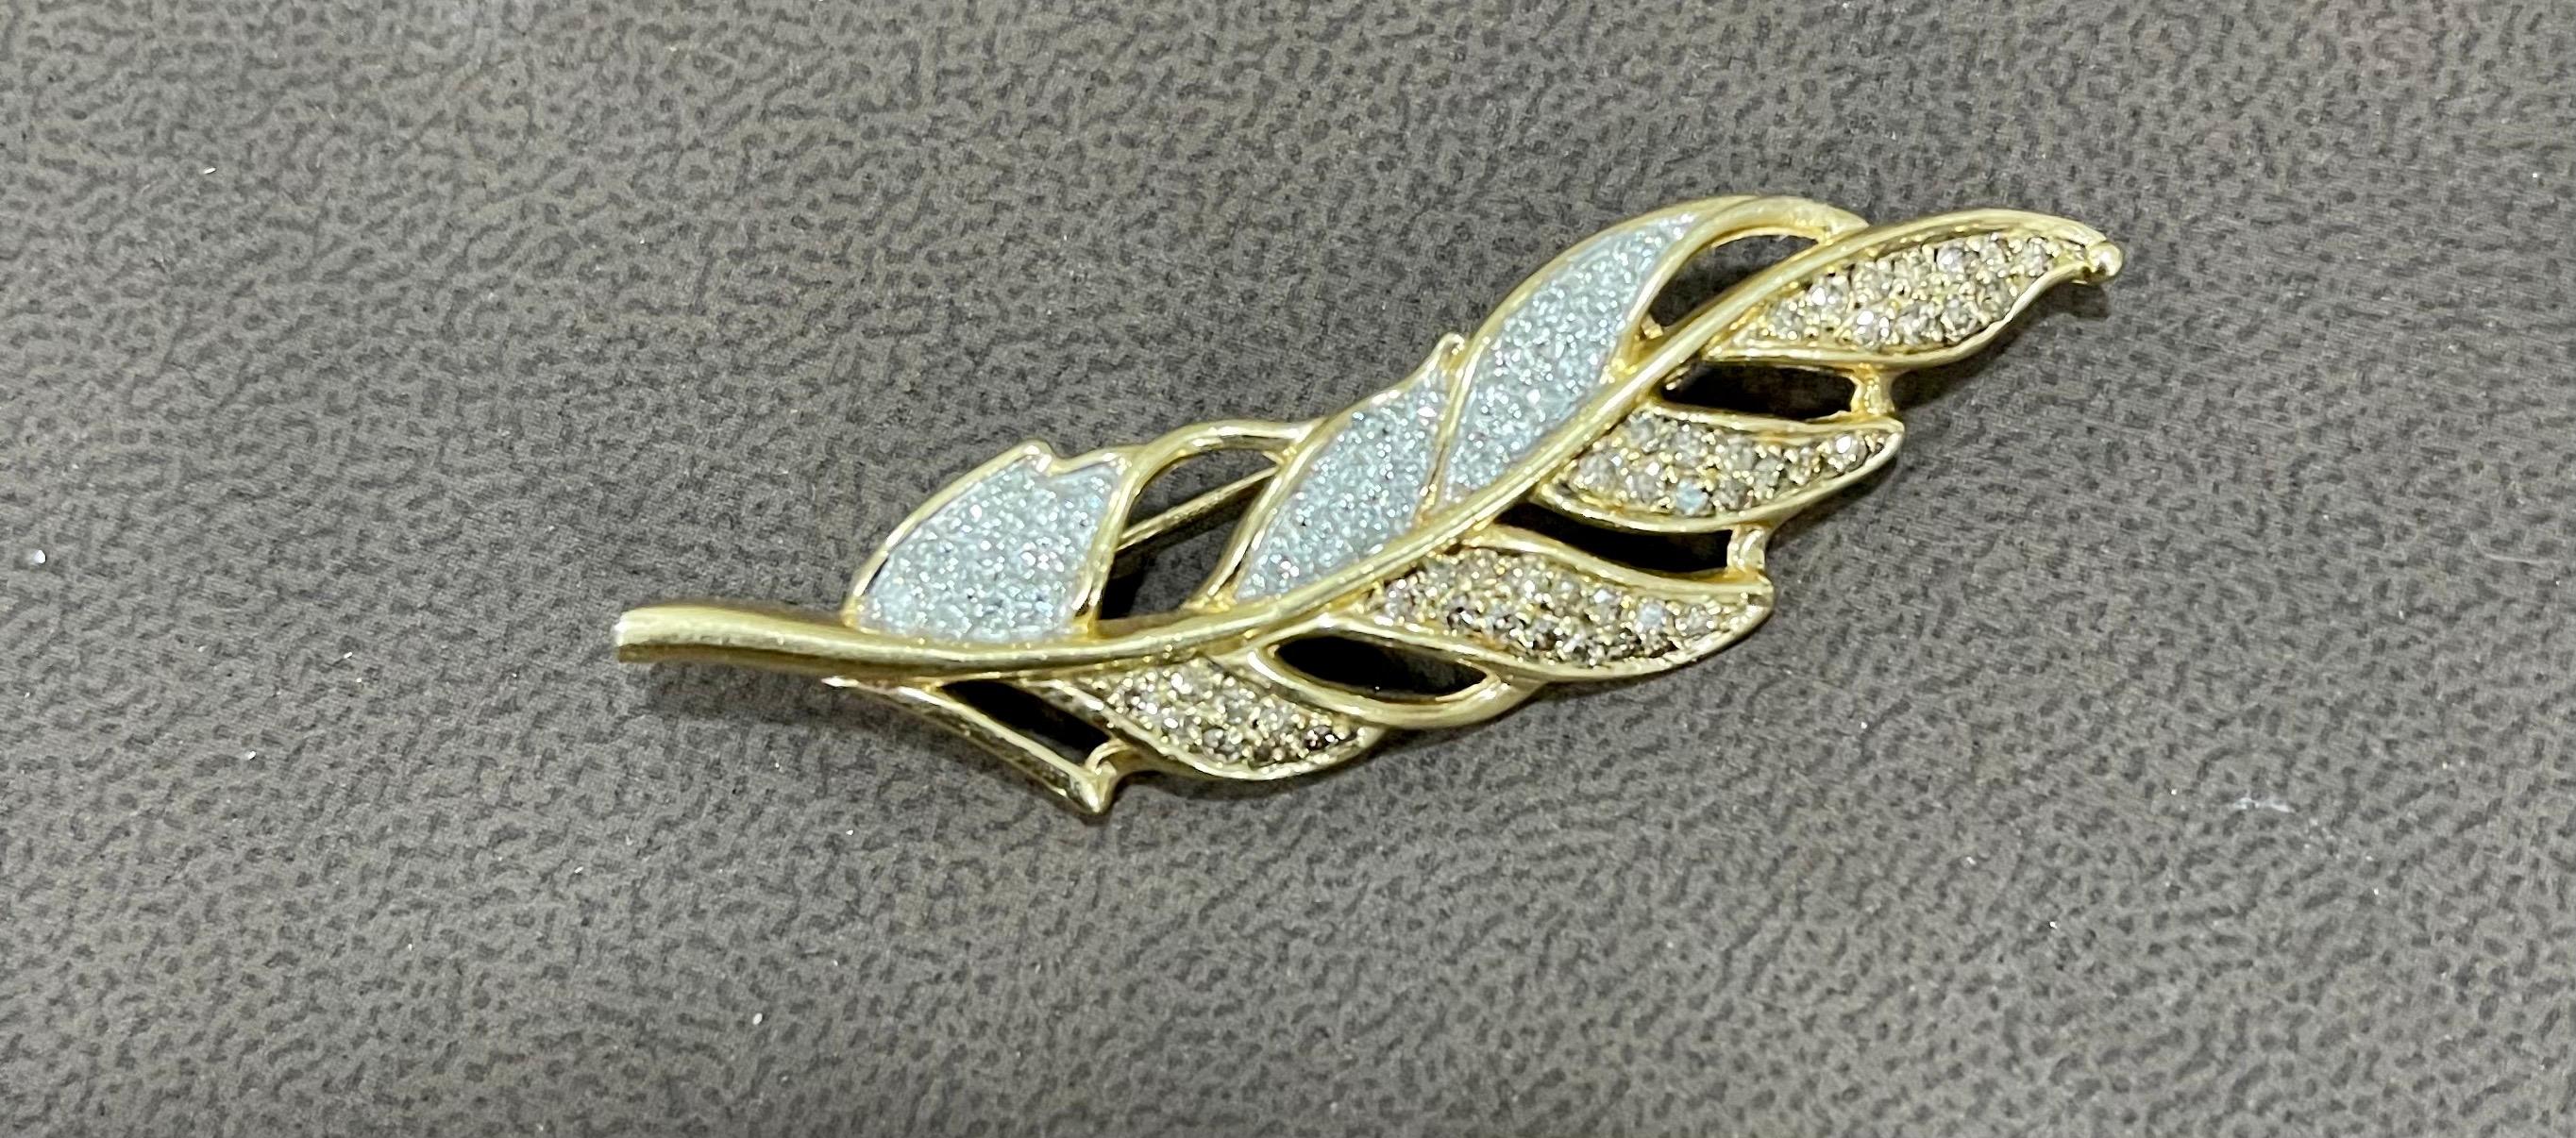 0.6 Carat Leaf Shaped Diamond 14 Karat Gold Pin or Brooch Affordable, Estate For Sale 2